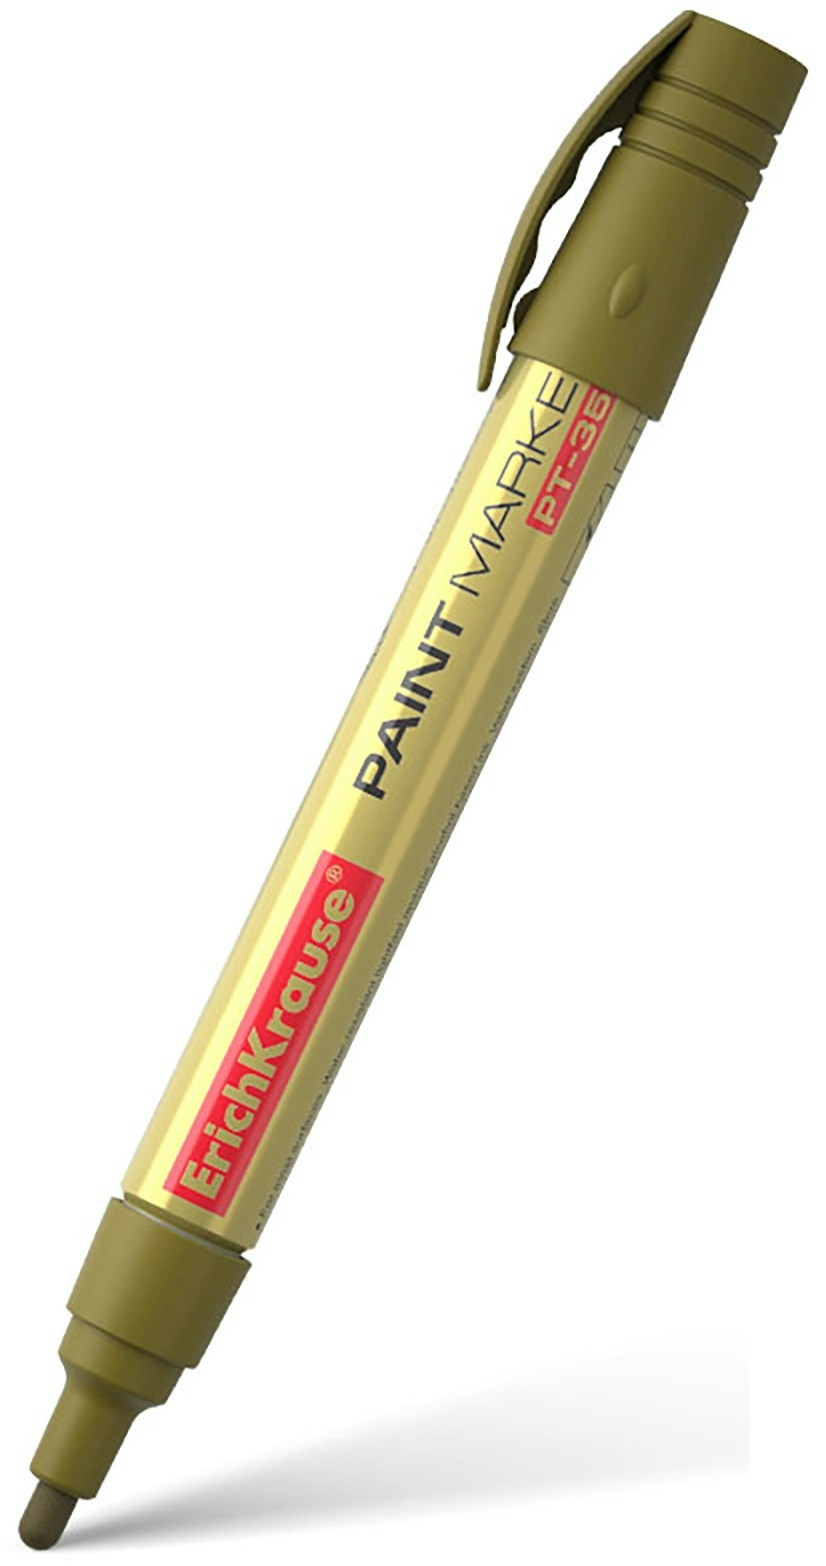 Permanent Marker Gold PT-350 wasserfest 1,5 - 2,5mm 1 Stück Marker Stifte zum Schreiben Markieren Beschriftungsstift für verschiedene Oberflächen